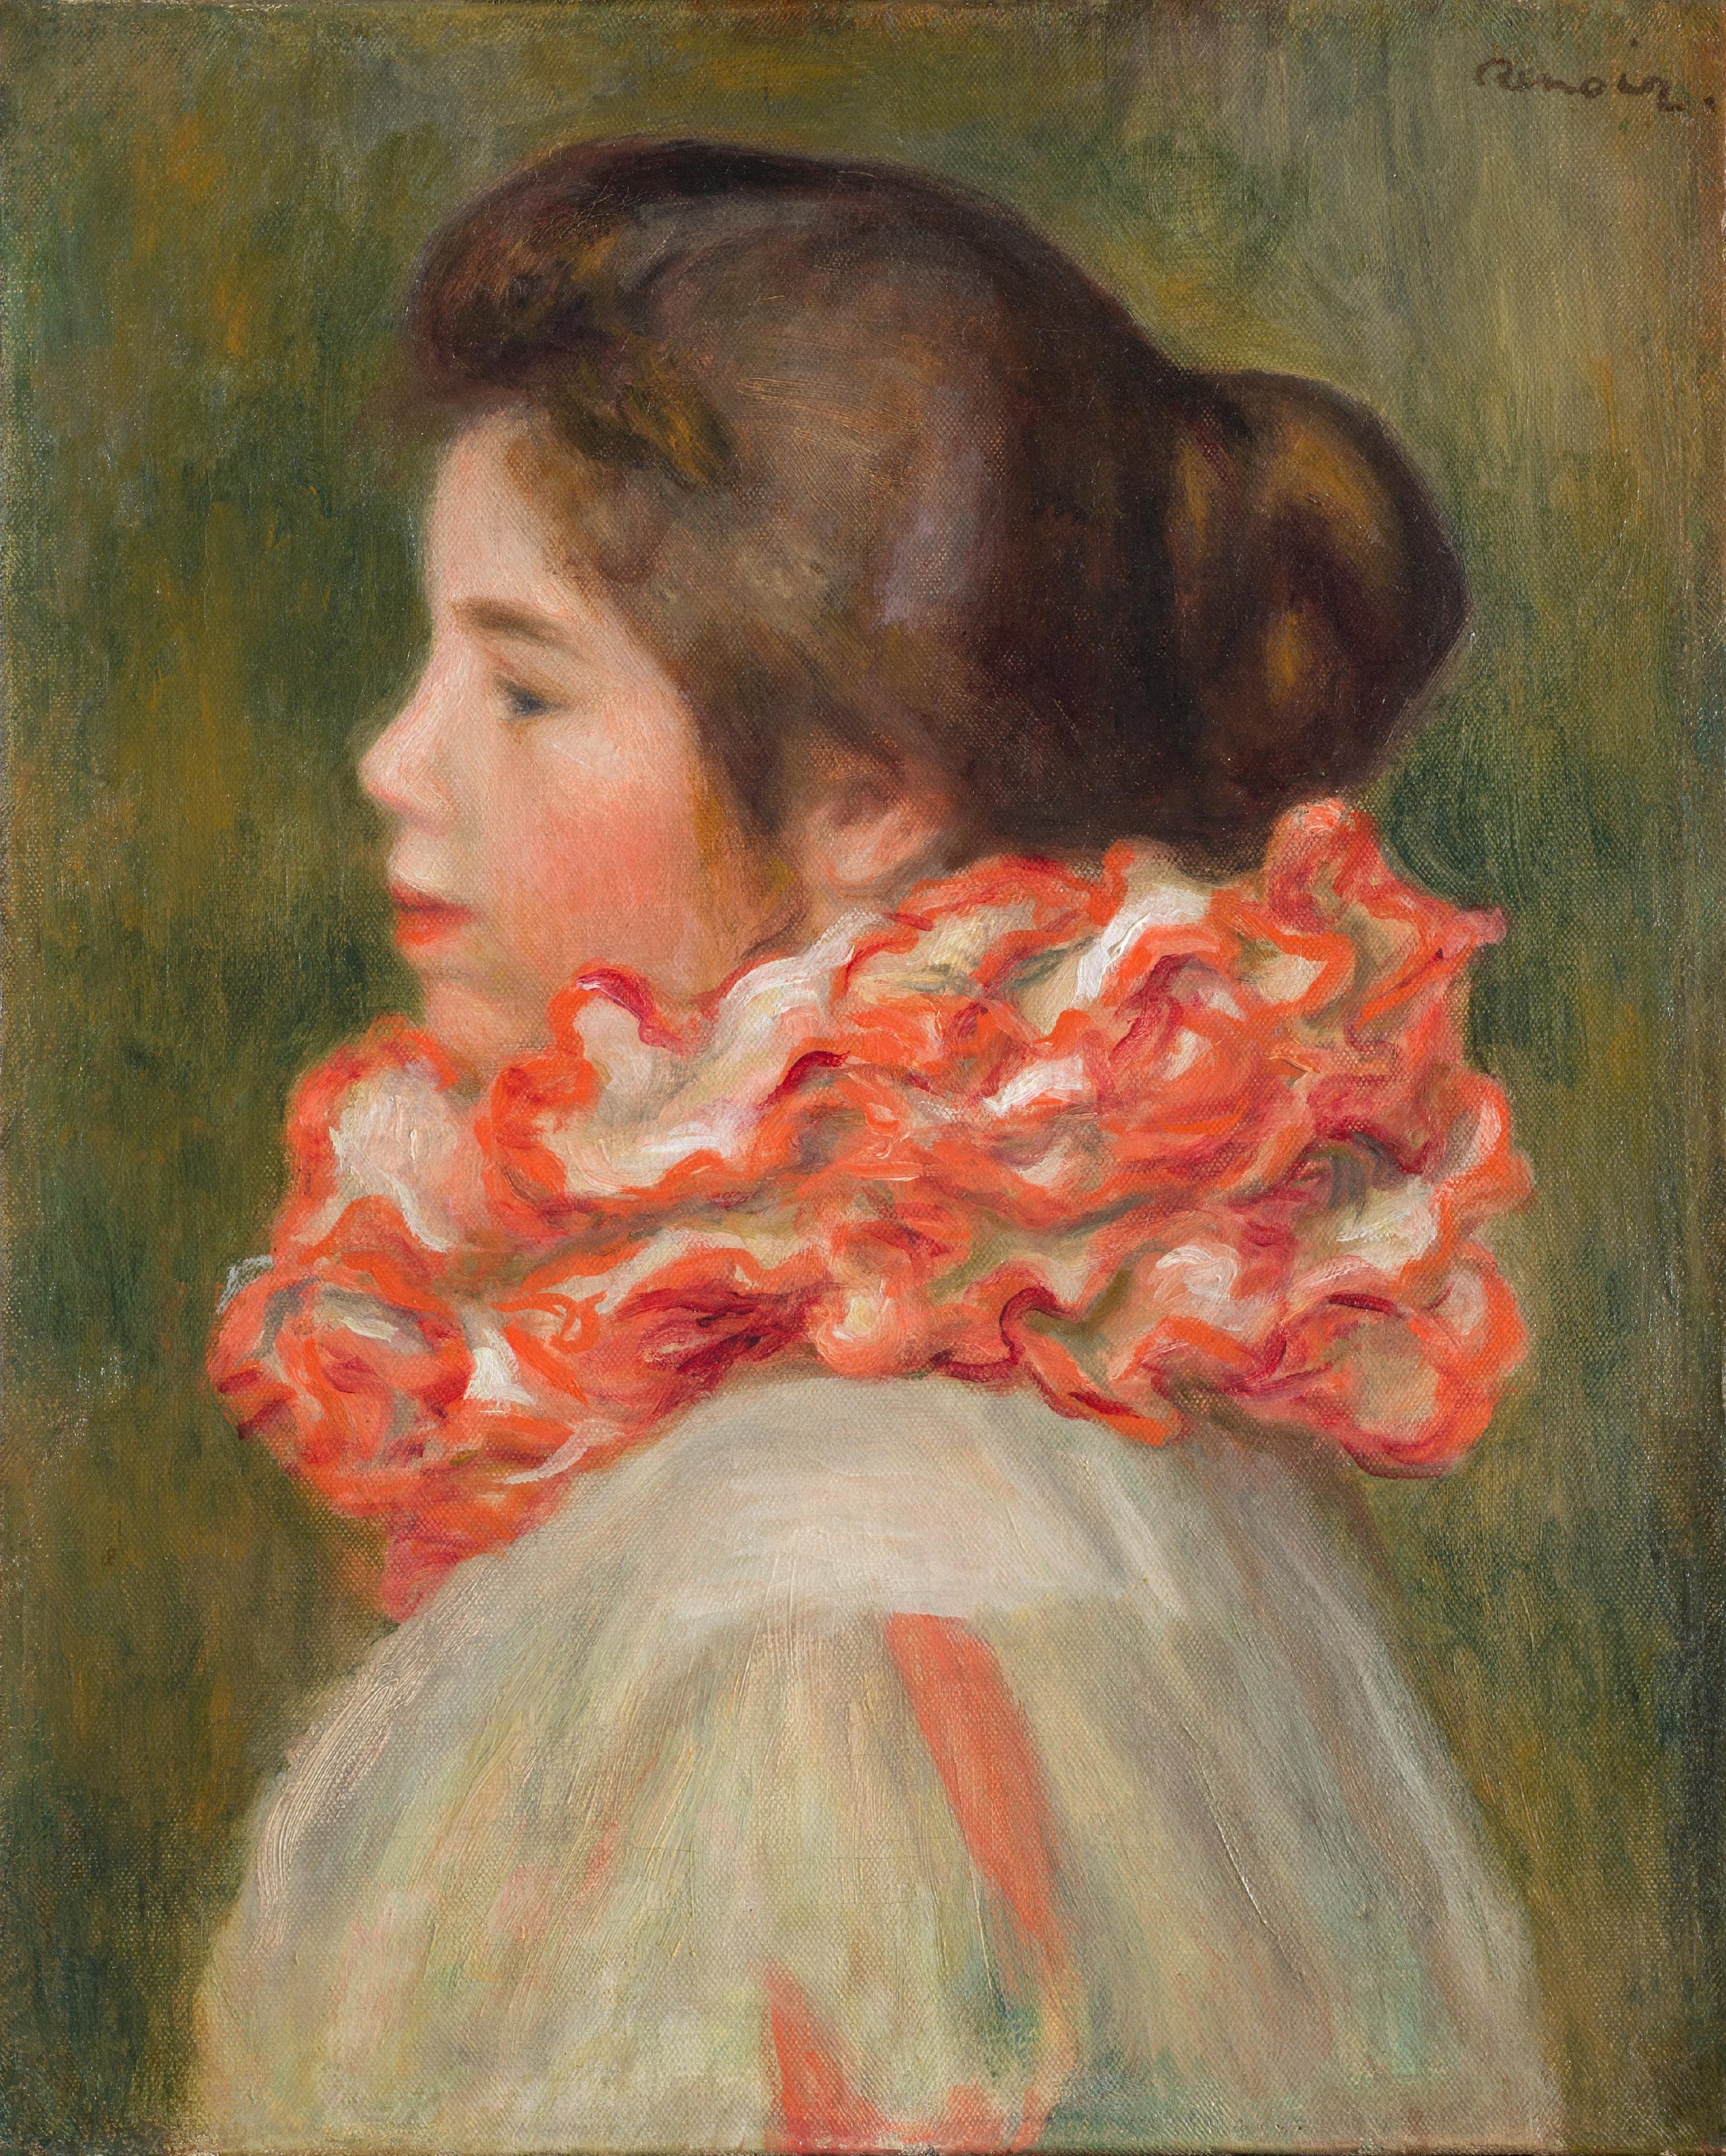 Girl in a Red Ruff by Pierre-Auguste Renoir - c. 1896 - 41.3 x 33.3 cm Philadelphia Museum of Art